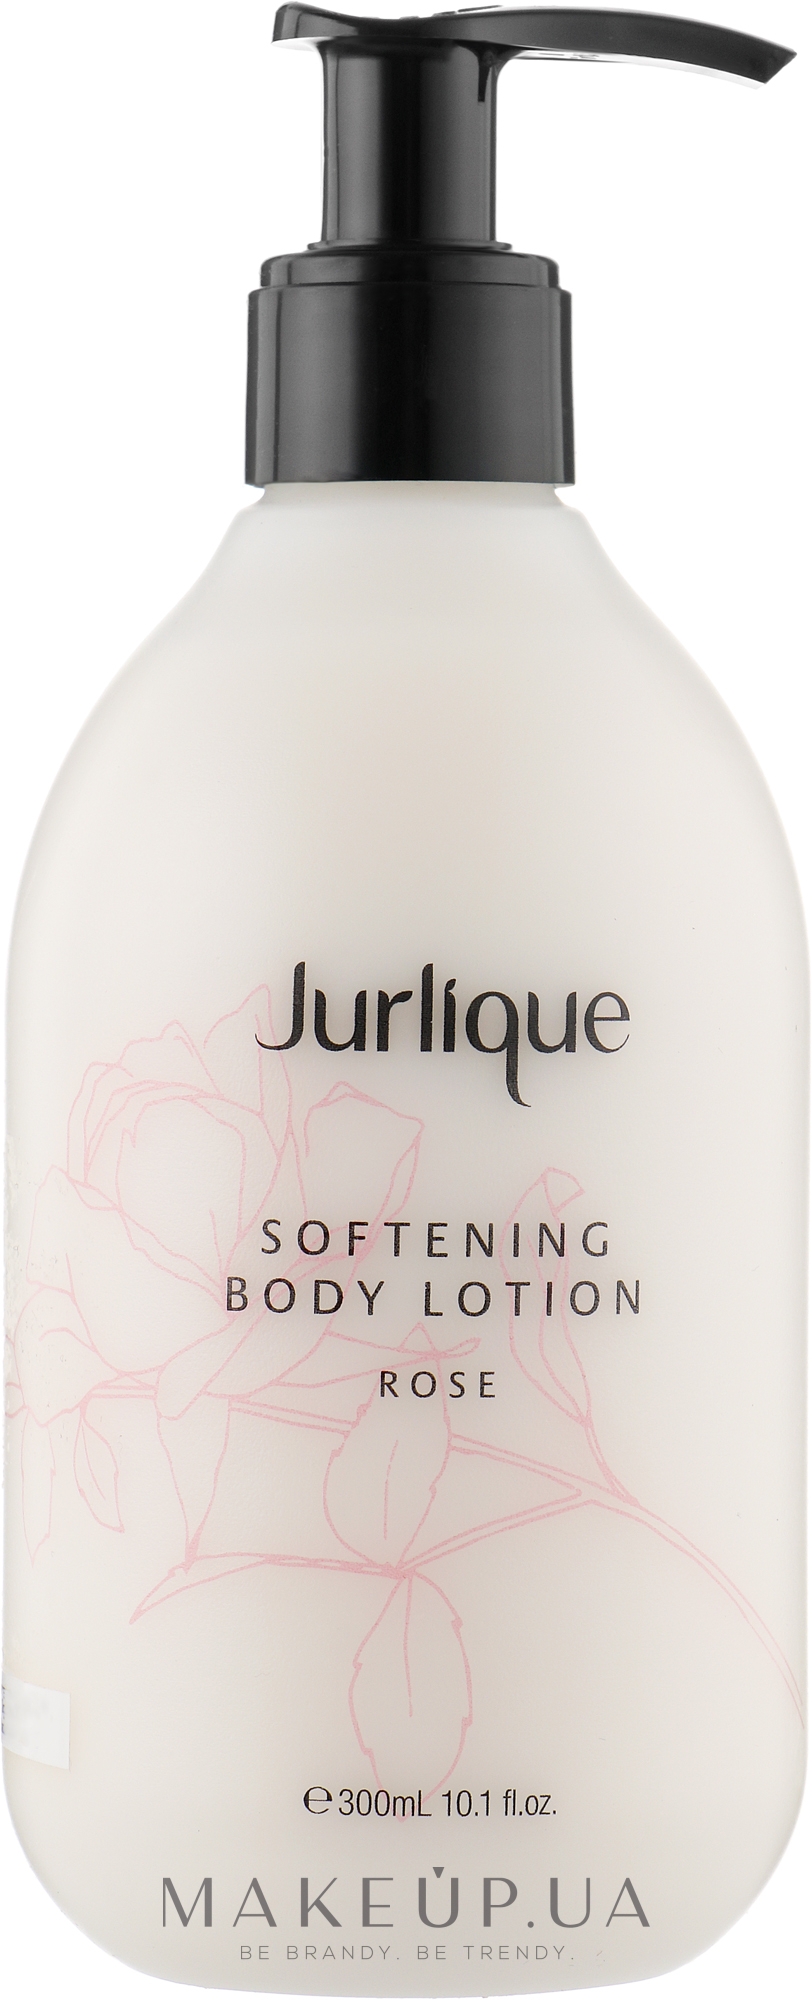 Смягчающий лосьон для тела с экстрактом розы - Jurlique Softening Body Lotion Rose — фото 300ml